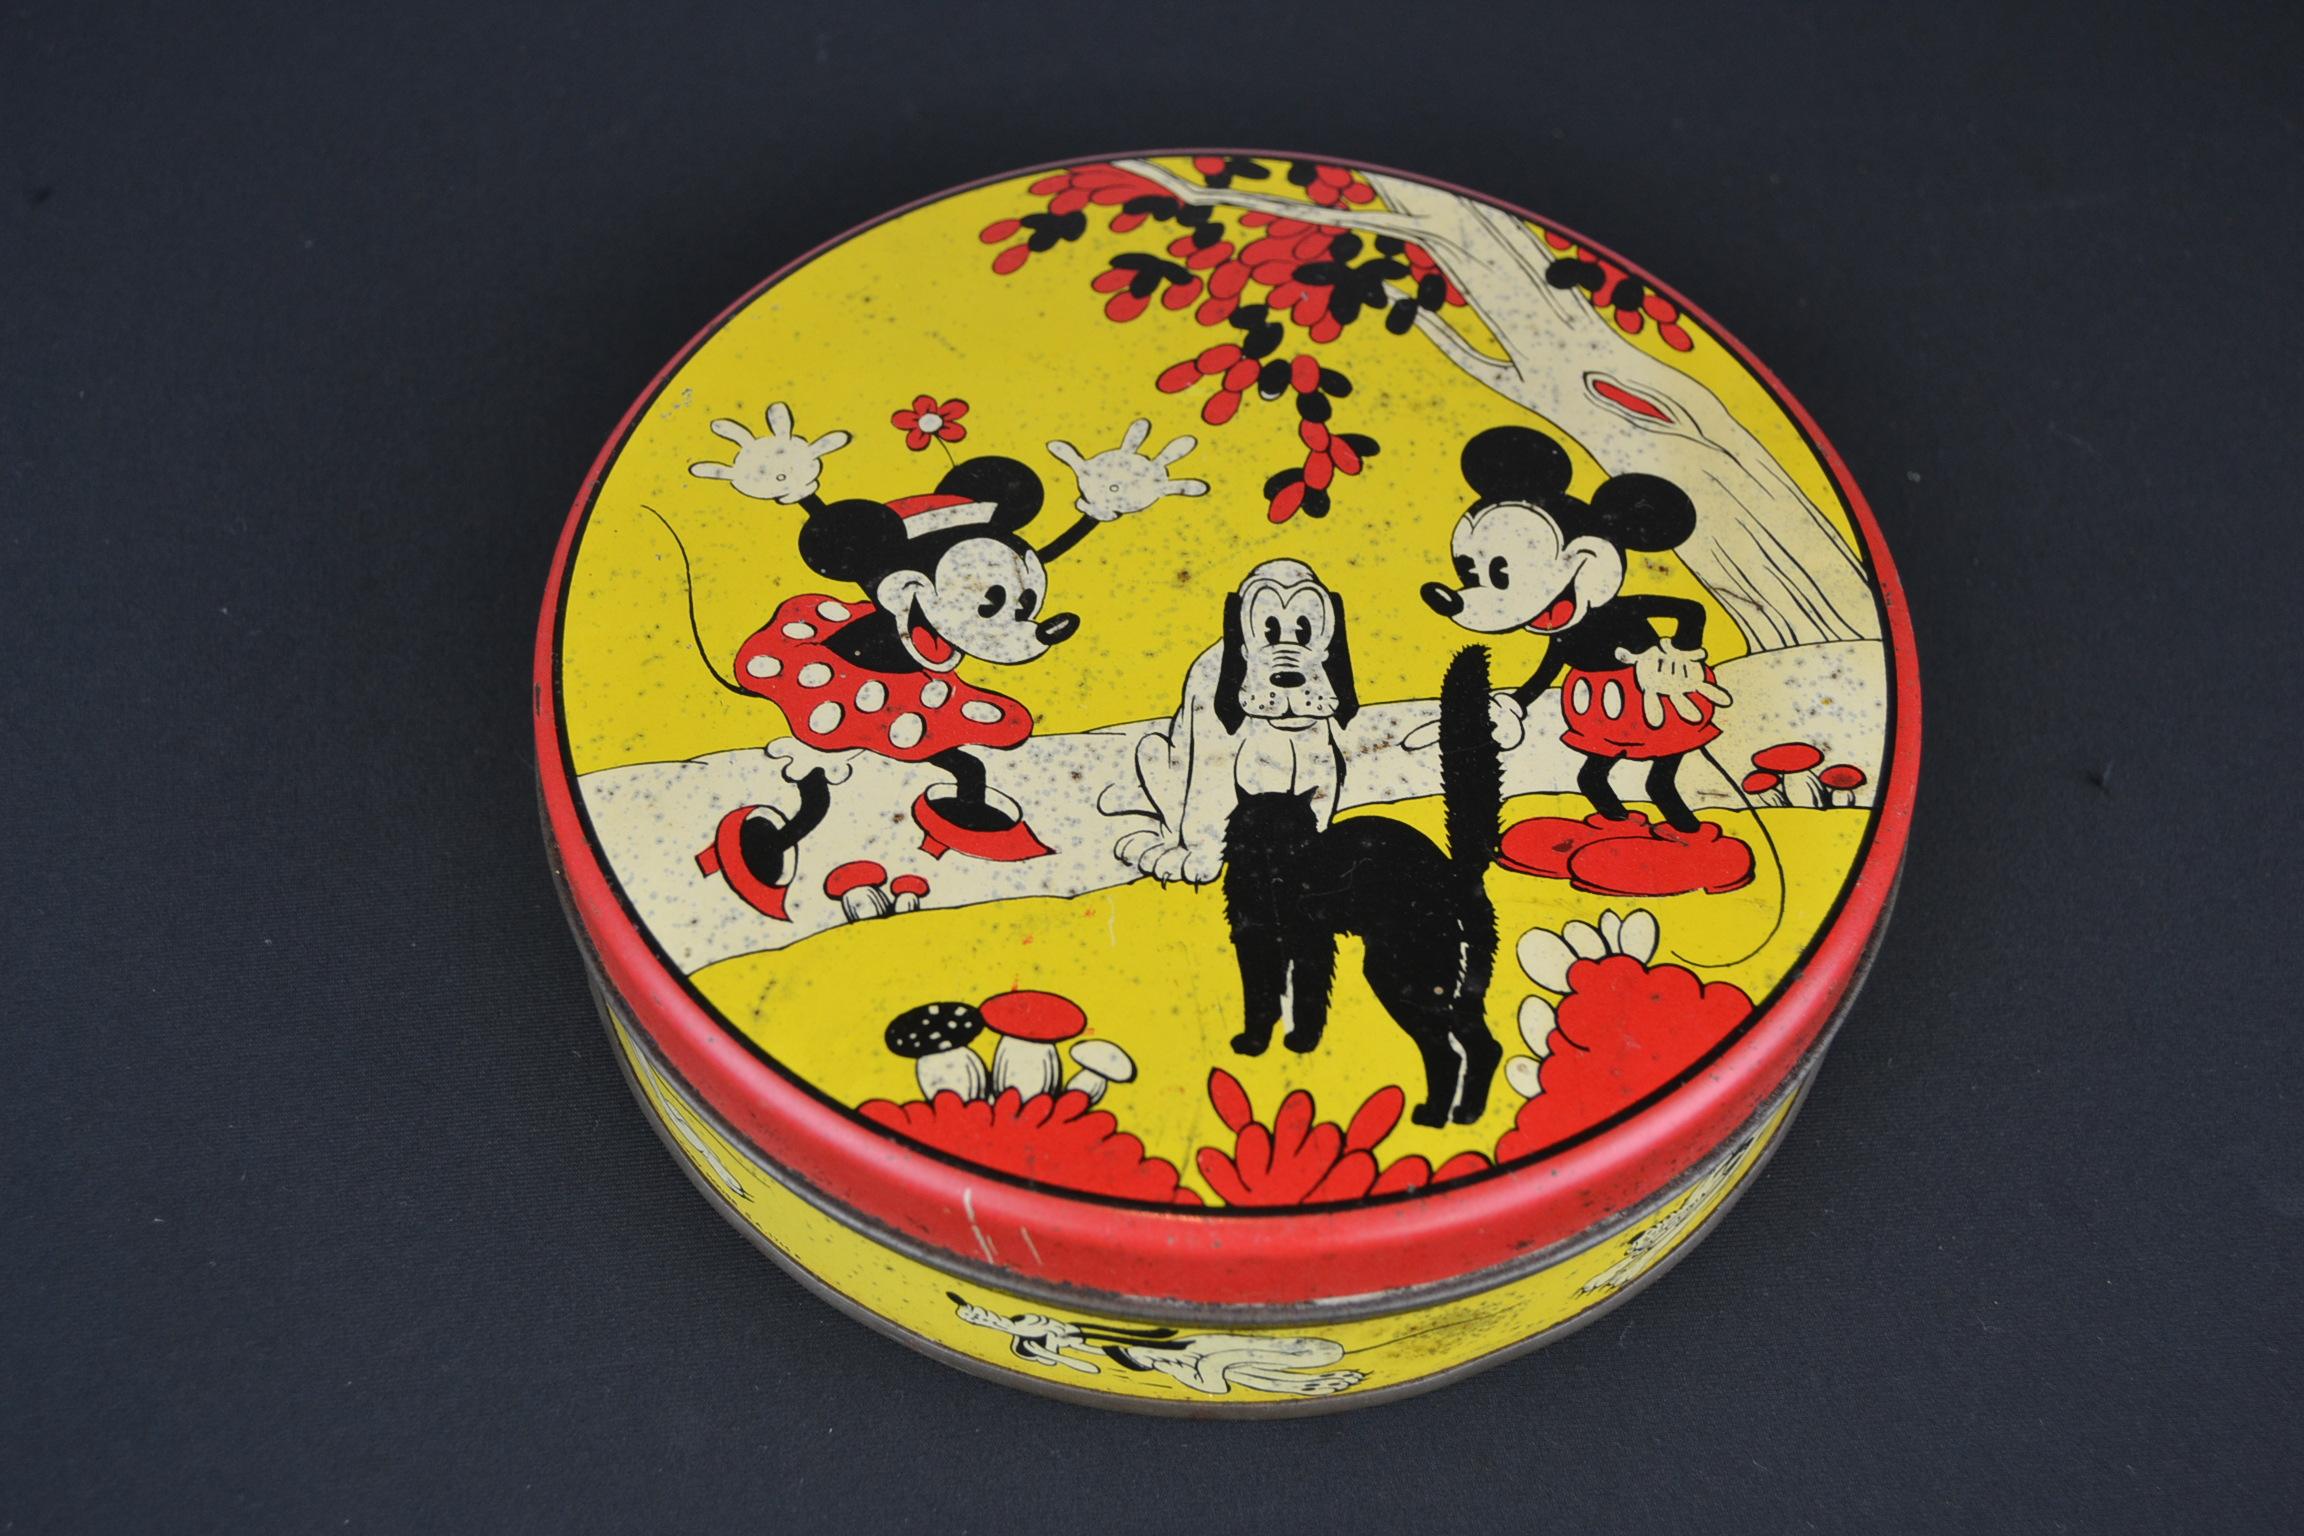 boîte de conserve Walt Disney des années 1930 avec Mickey Mouse, Minnie Mouse, Pluto et le chat.
Cette boîte ronde jaune lithographique présente de belles images des célèbres personnages de Walt Disney Animation. 
Combinaison de couleurs rouge,